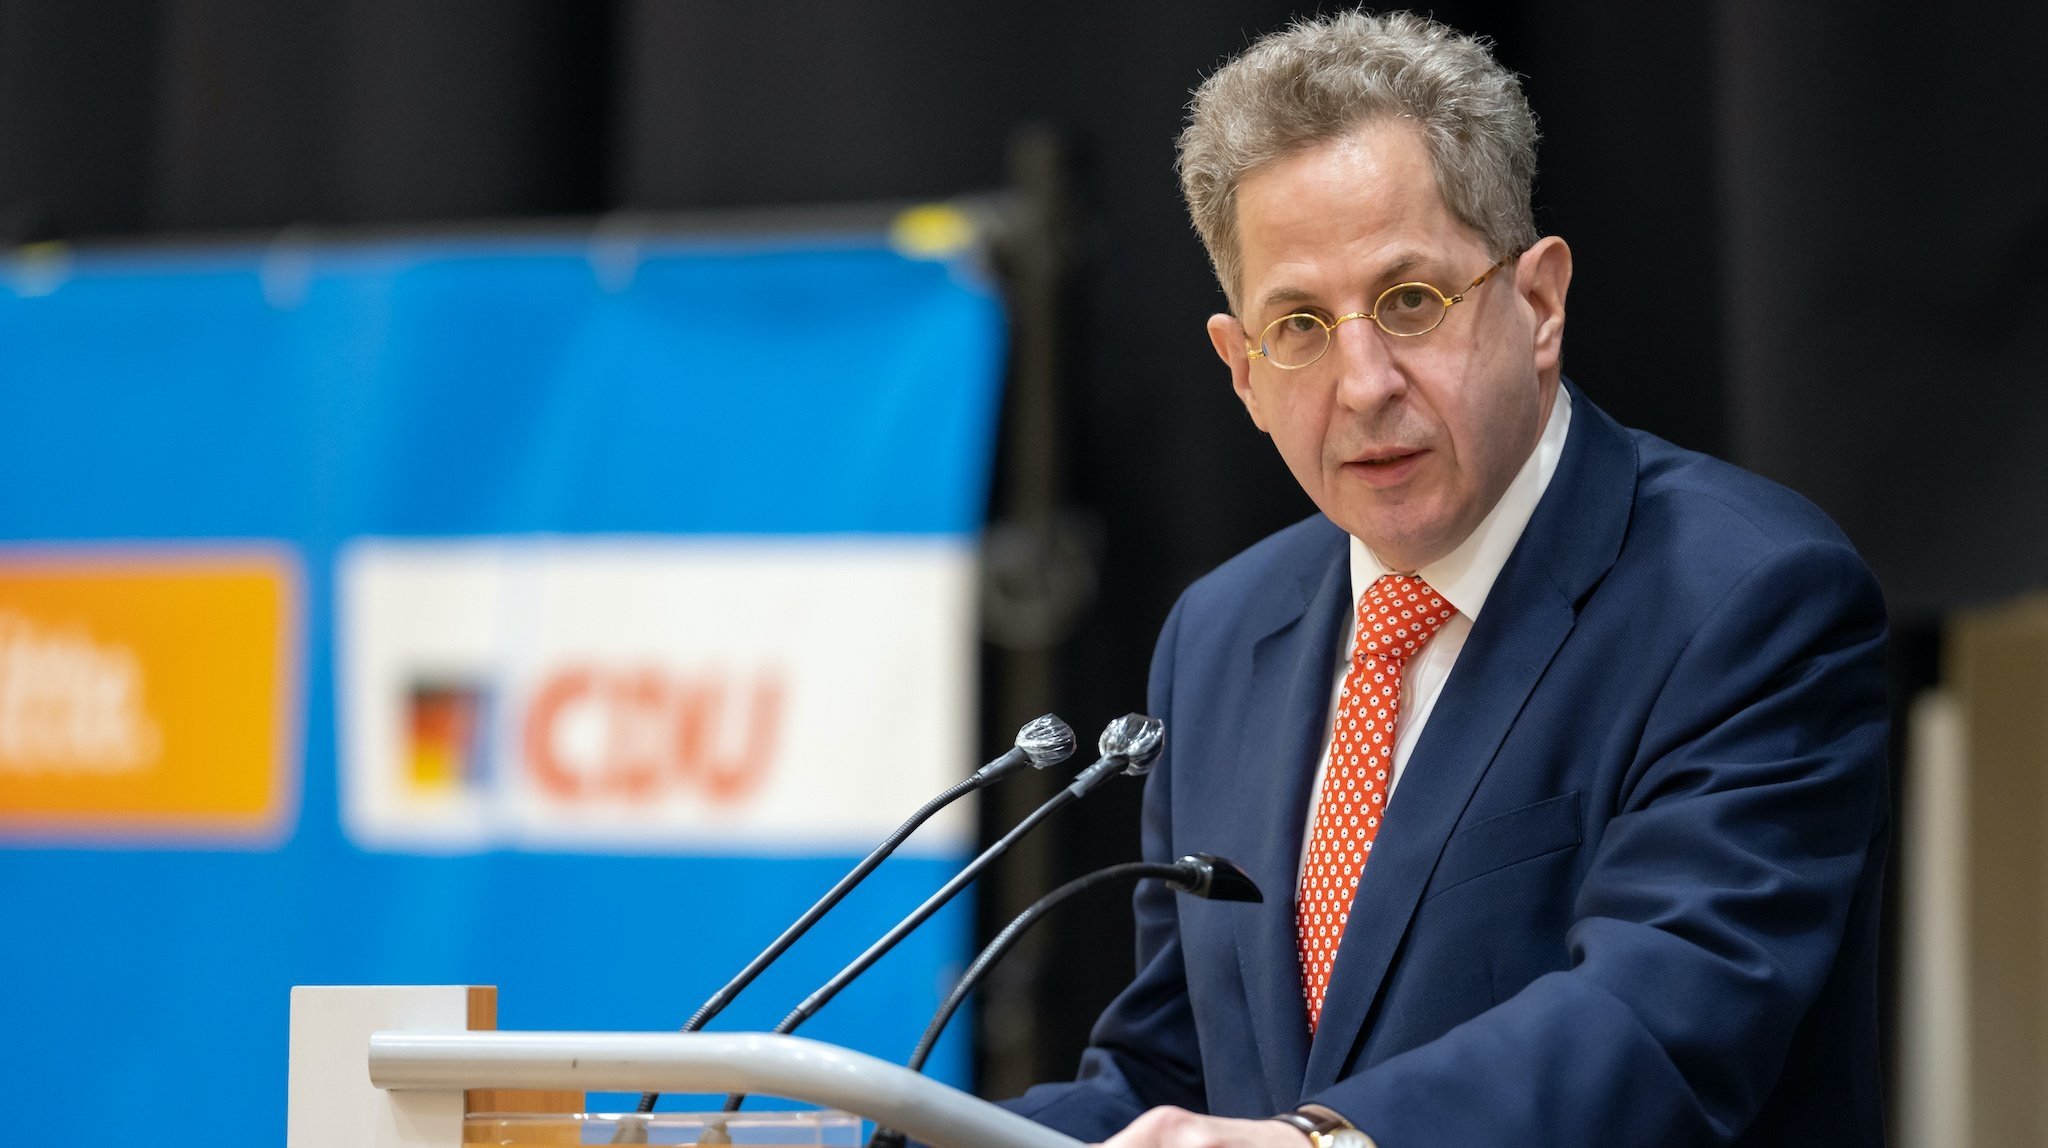 Ein Parteigericht lehnte den Ausschluss von Maaßen aus der CDU ab